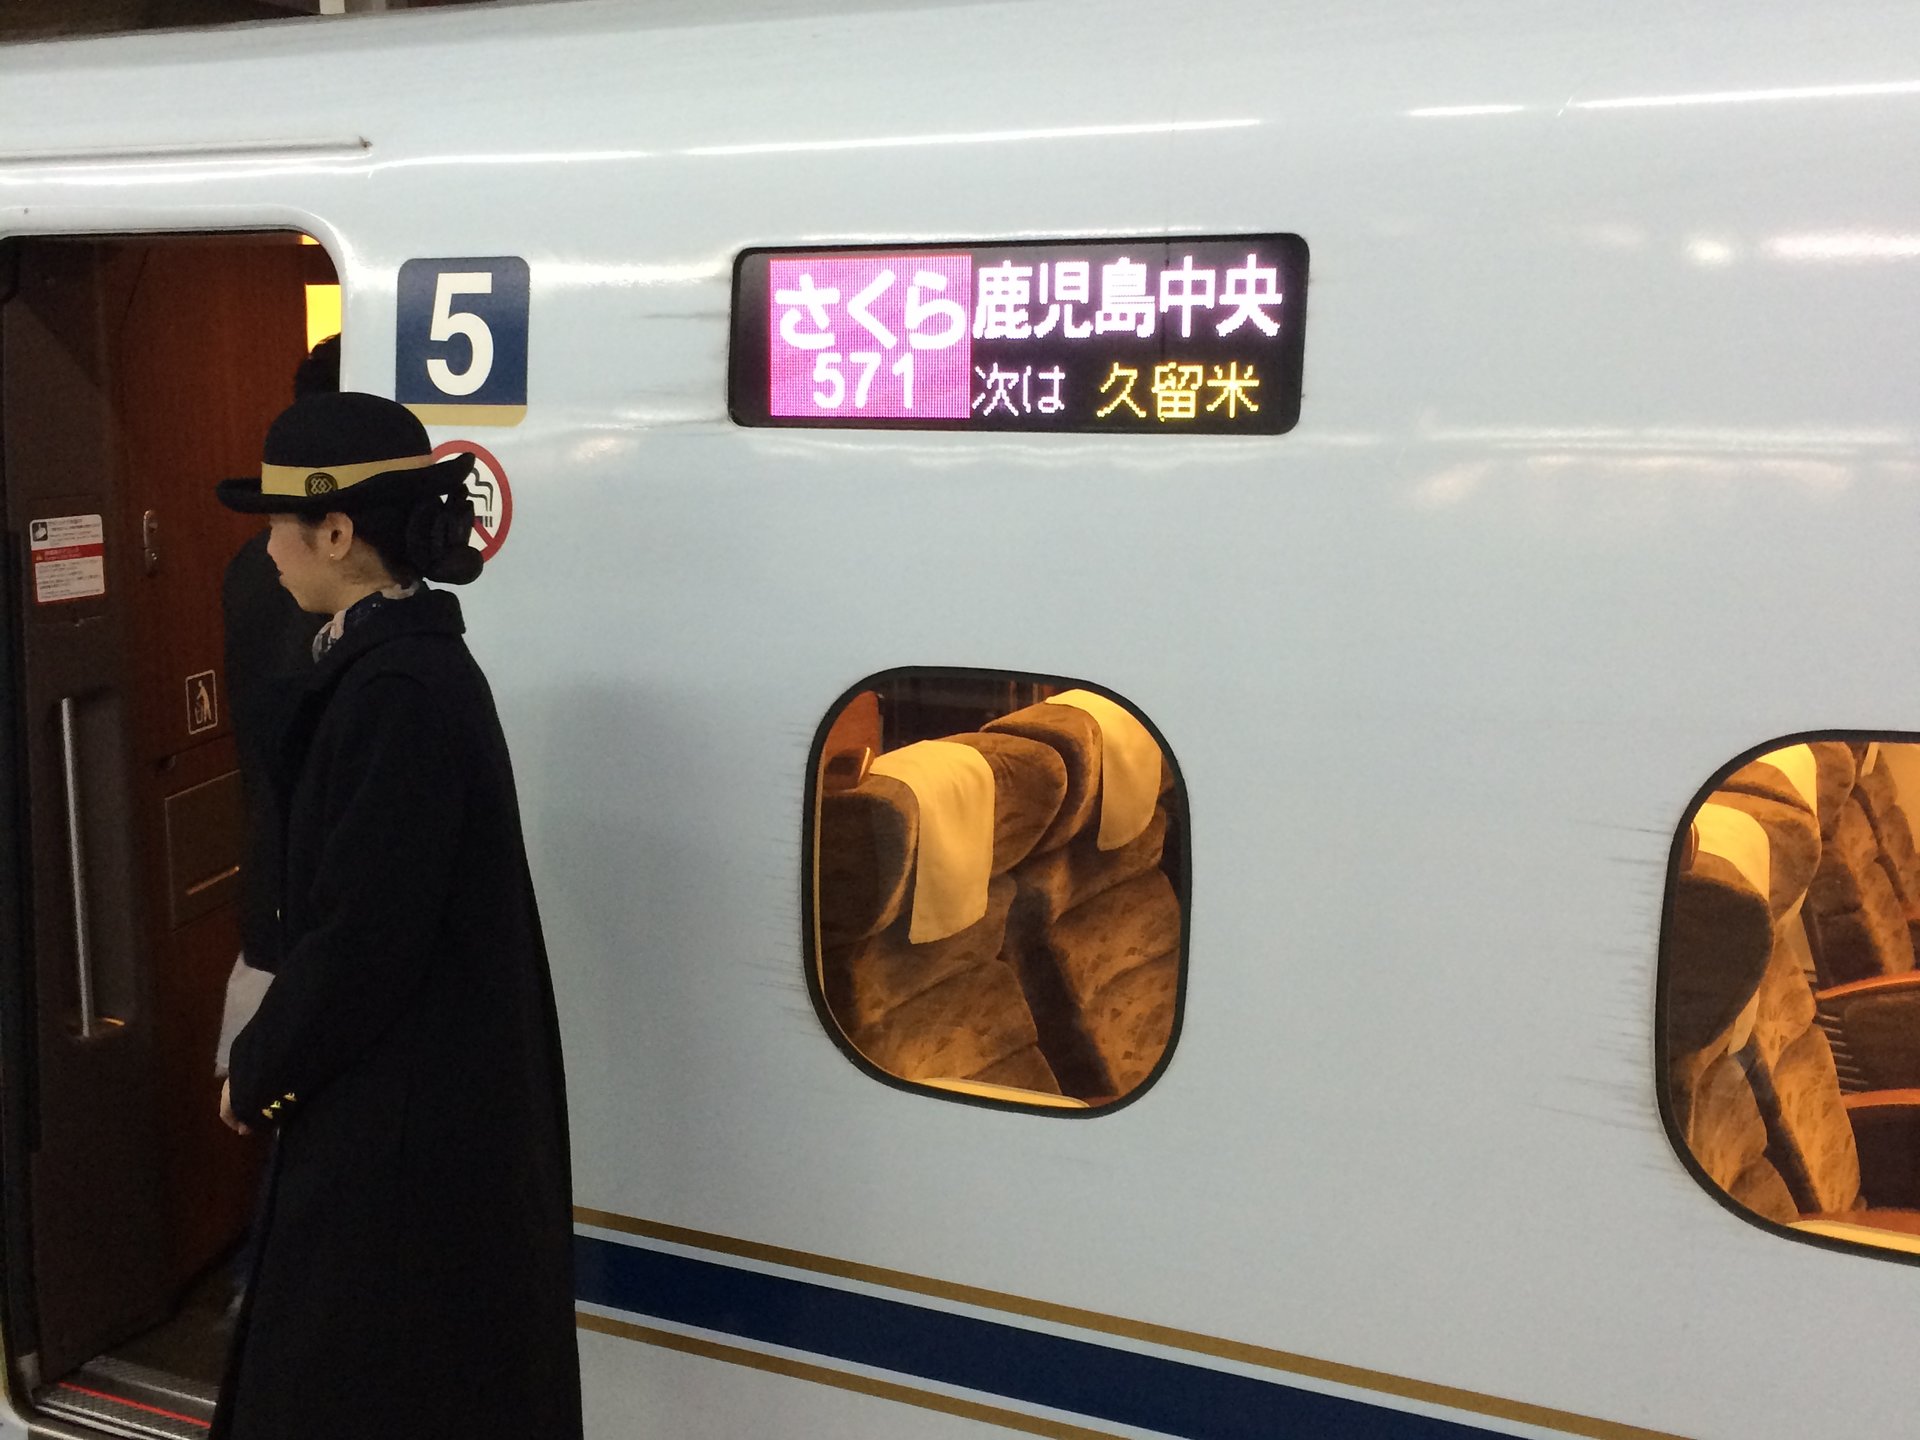 【一日でできる特別な旅】新幹線一日日本縦断。東京発新青森経由鹿児島中央行